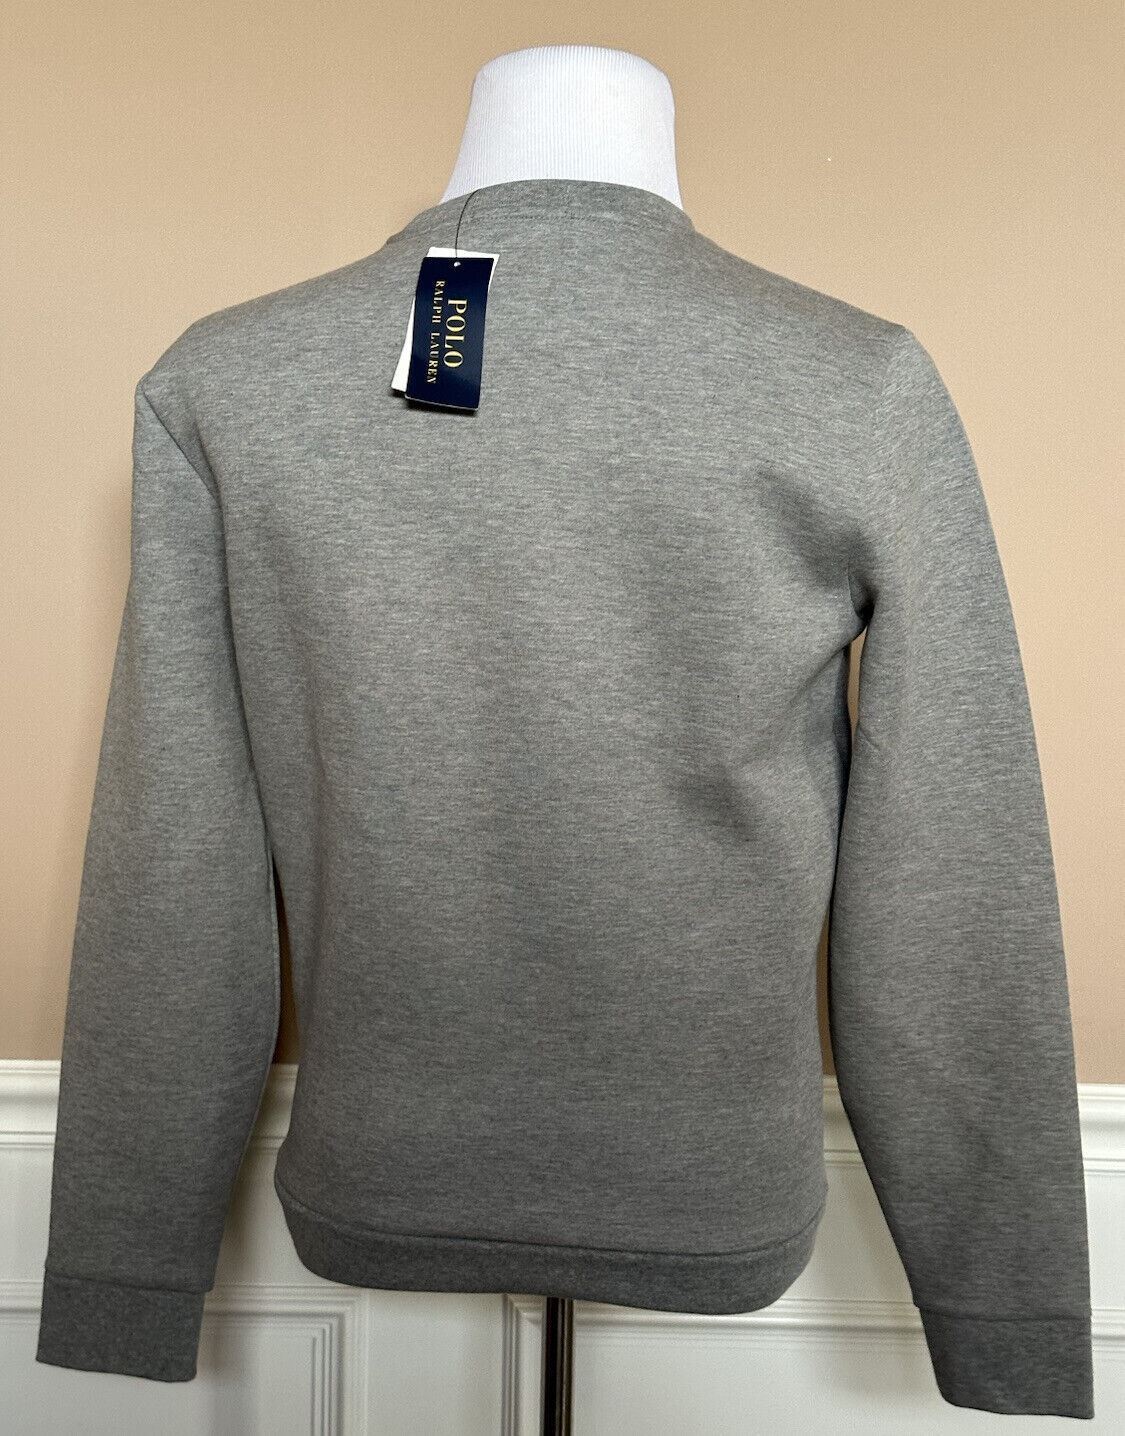 NWT $138 Polo Ralph Lauren Polo Embossed Fleece Sweatshirt Gray XL